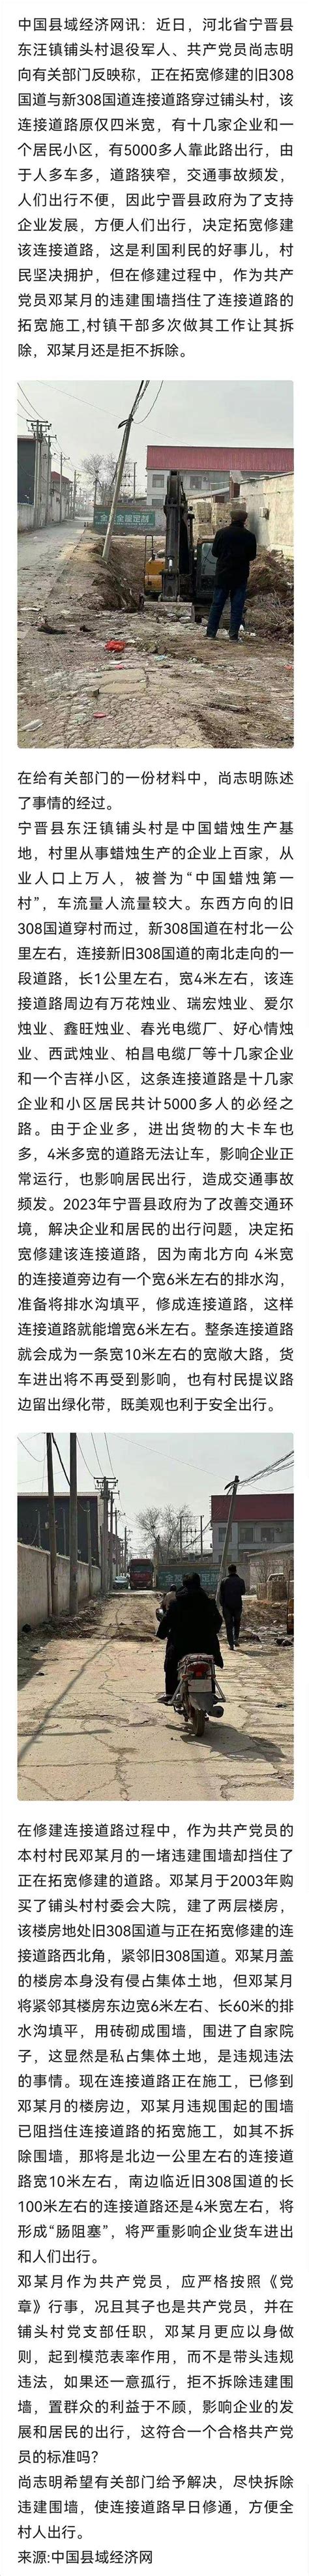 邢台123：河北宁晋县铺头村一 违建围墙阻碍道路施工，何时能拆除？